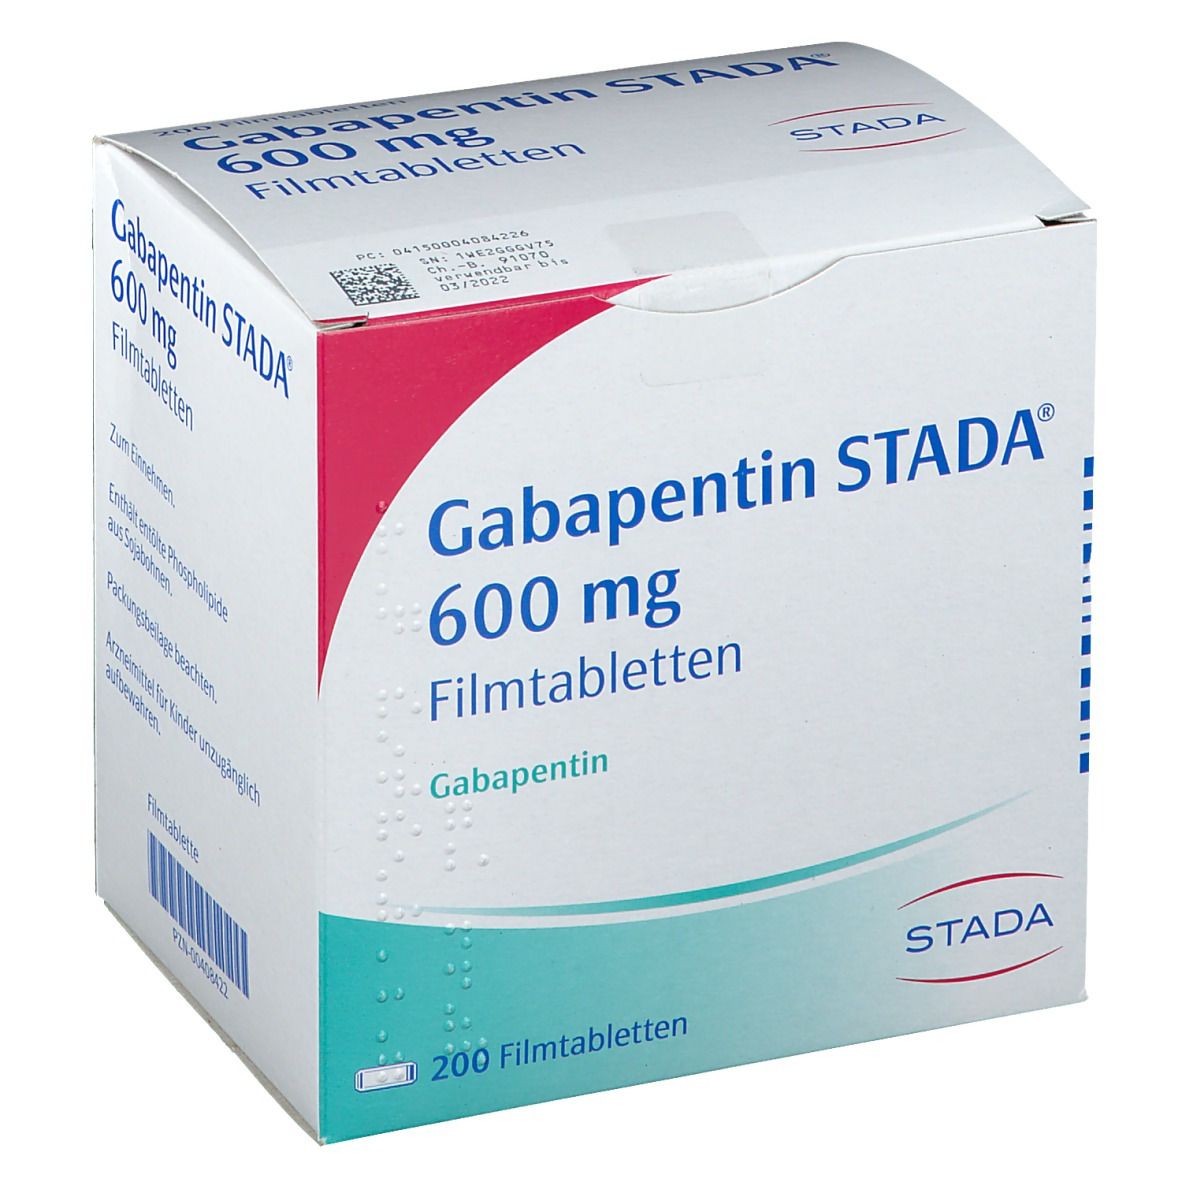 Габантин. Габапентин канон 600мг. Габапентин таб 600 мг. Таблетки габапентин 600мг. Нейронтин габапентин 600.